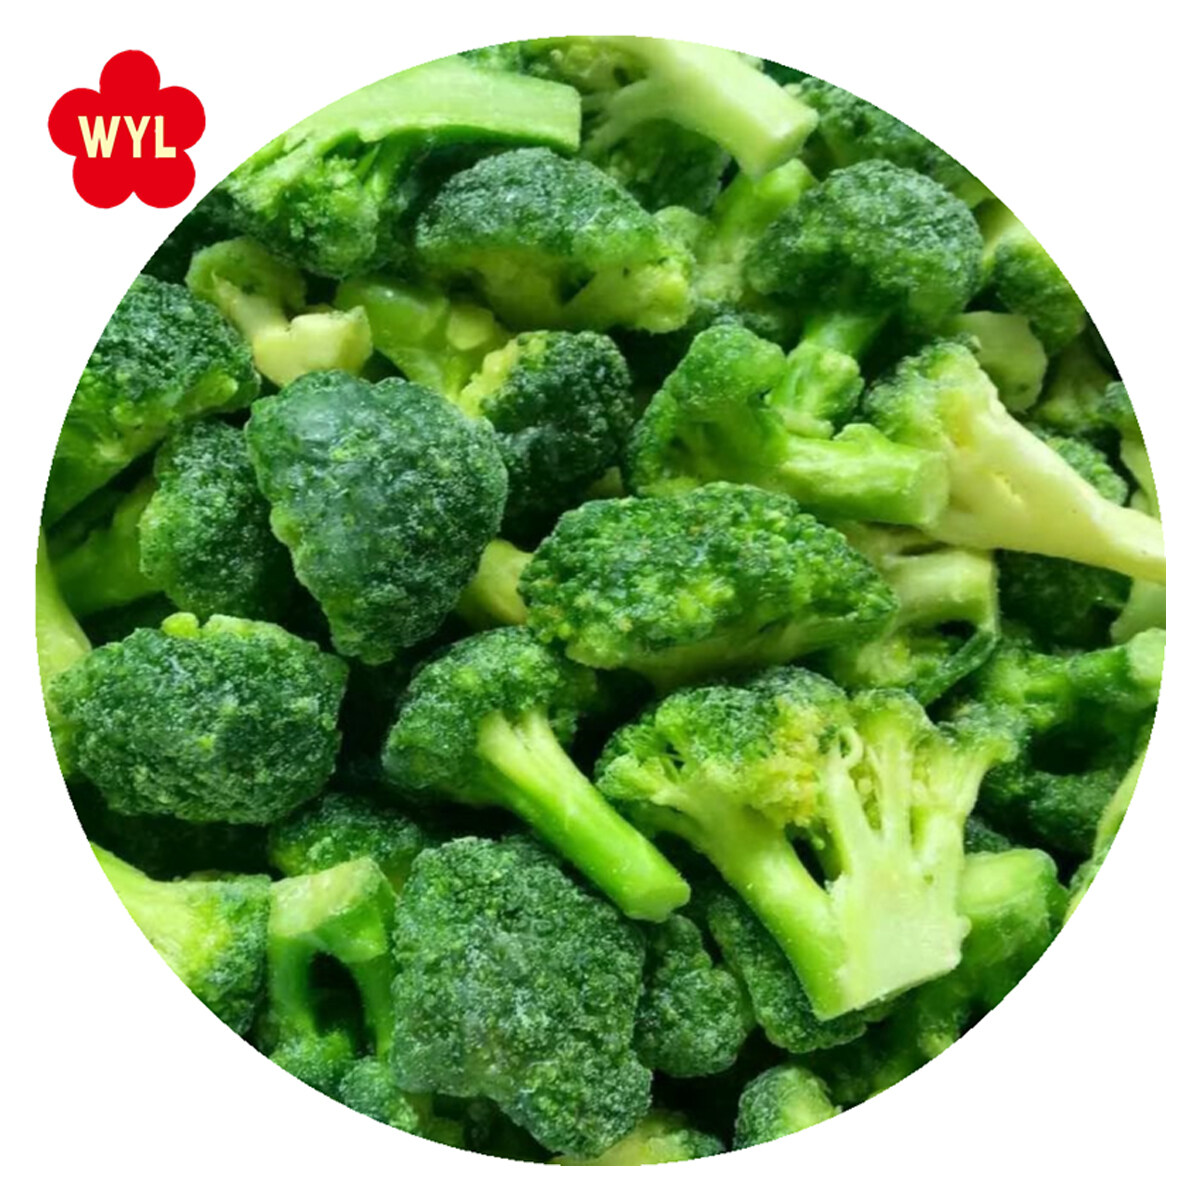 競争力のある価格の冷凍グリーンブロッコリーを備えたIQF新鮮な冷凍ブロッコリー